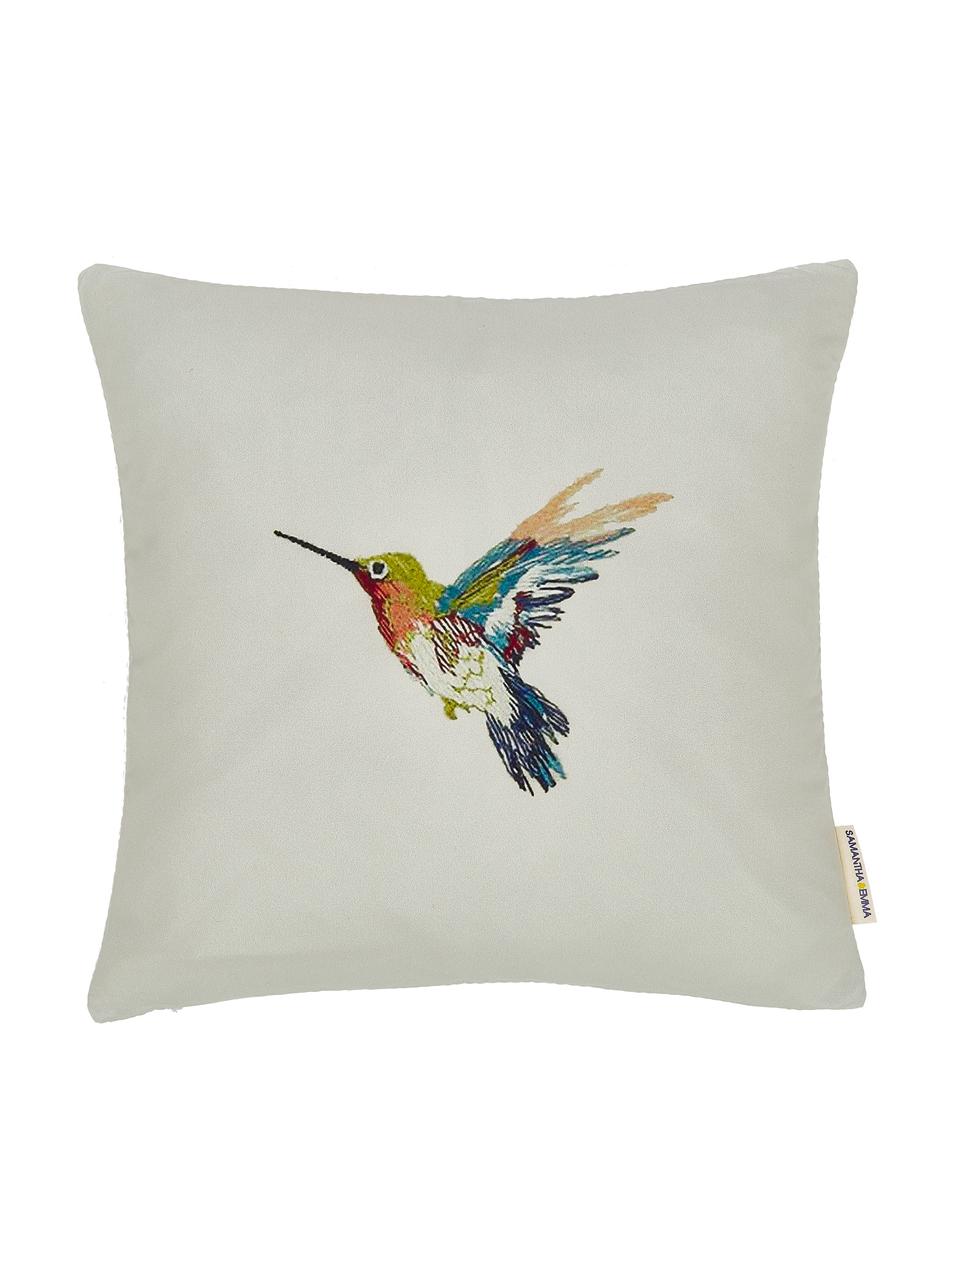 Kussenhoezen Joanna met kolibriemotief, 2 stuks, 100% polyester, Multicolour, 40 x 40 cm